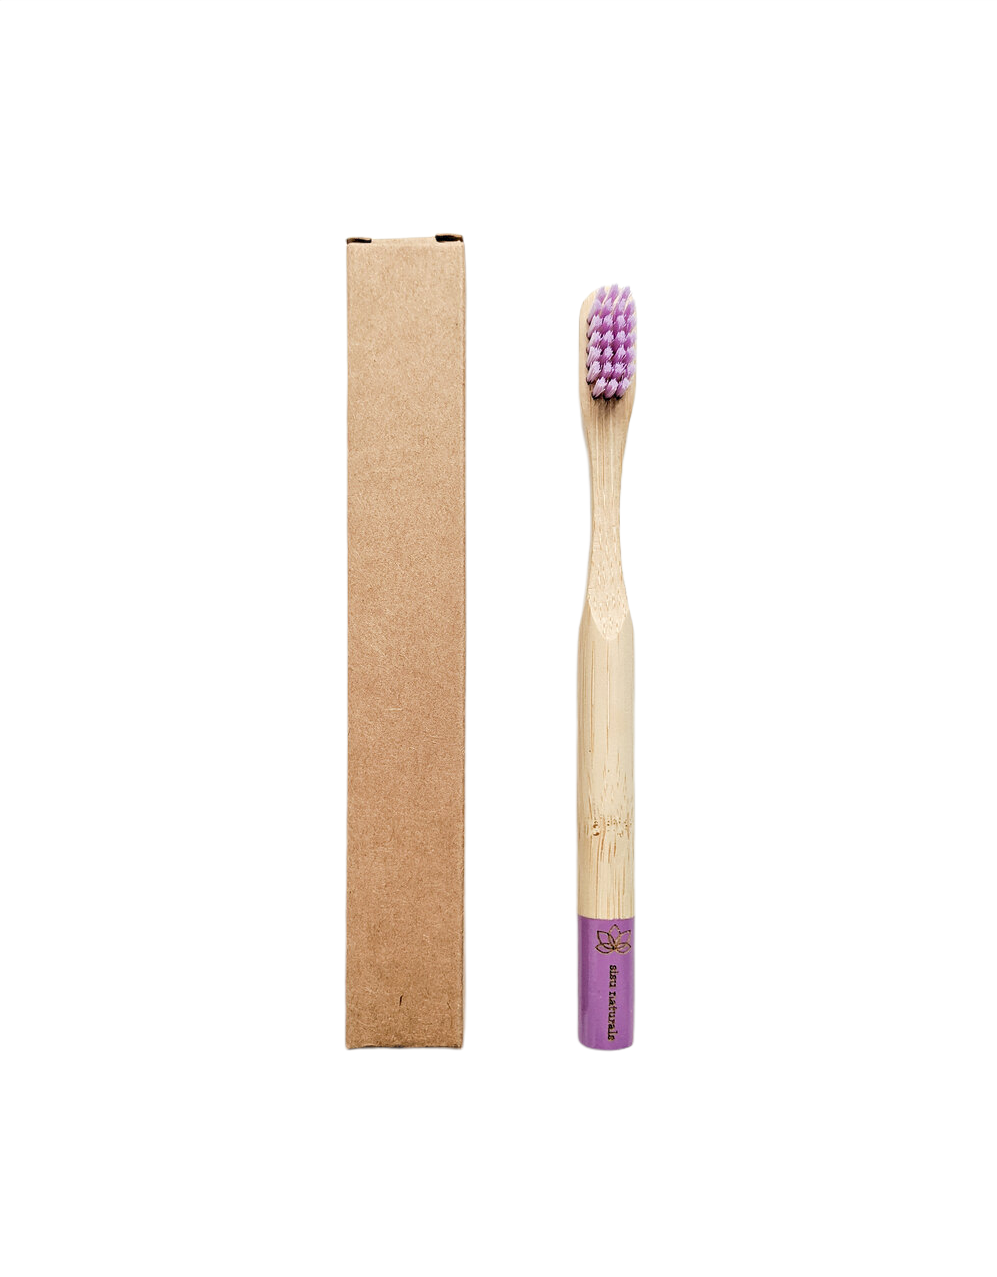 Bamboo Children's Toothbrush - Purple